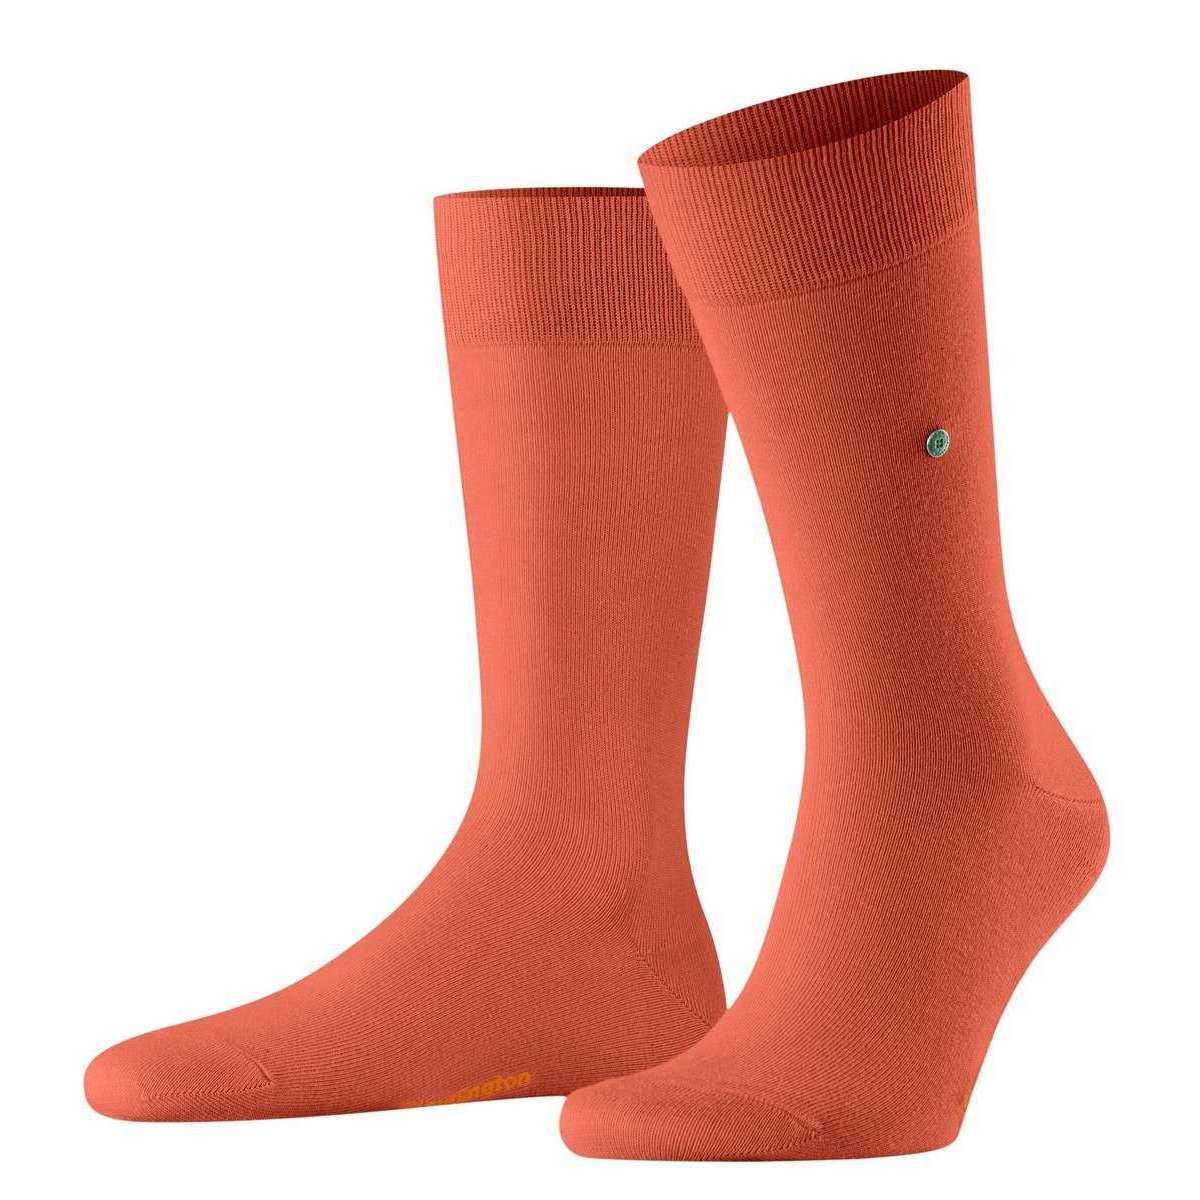 Burlington Lord Socks - Sunset Orange